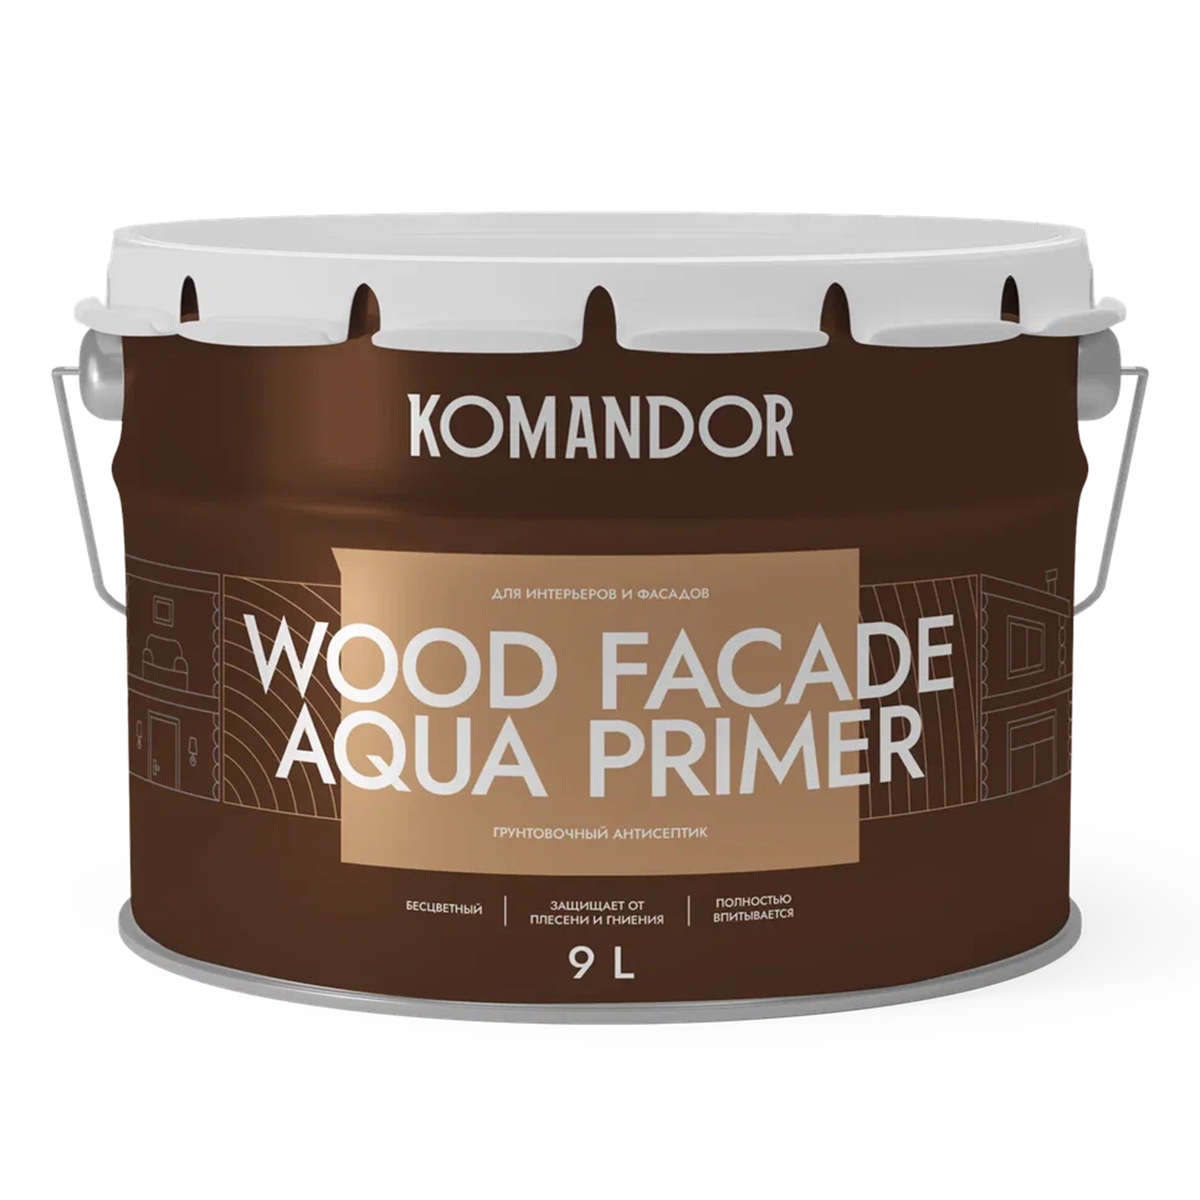 Грунт-антисептик для дерева Komandor Wood Facade Aqua Primer, 9 л нилпа про плант   нейтральный грунт для аквариумных растений 10 кг